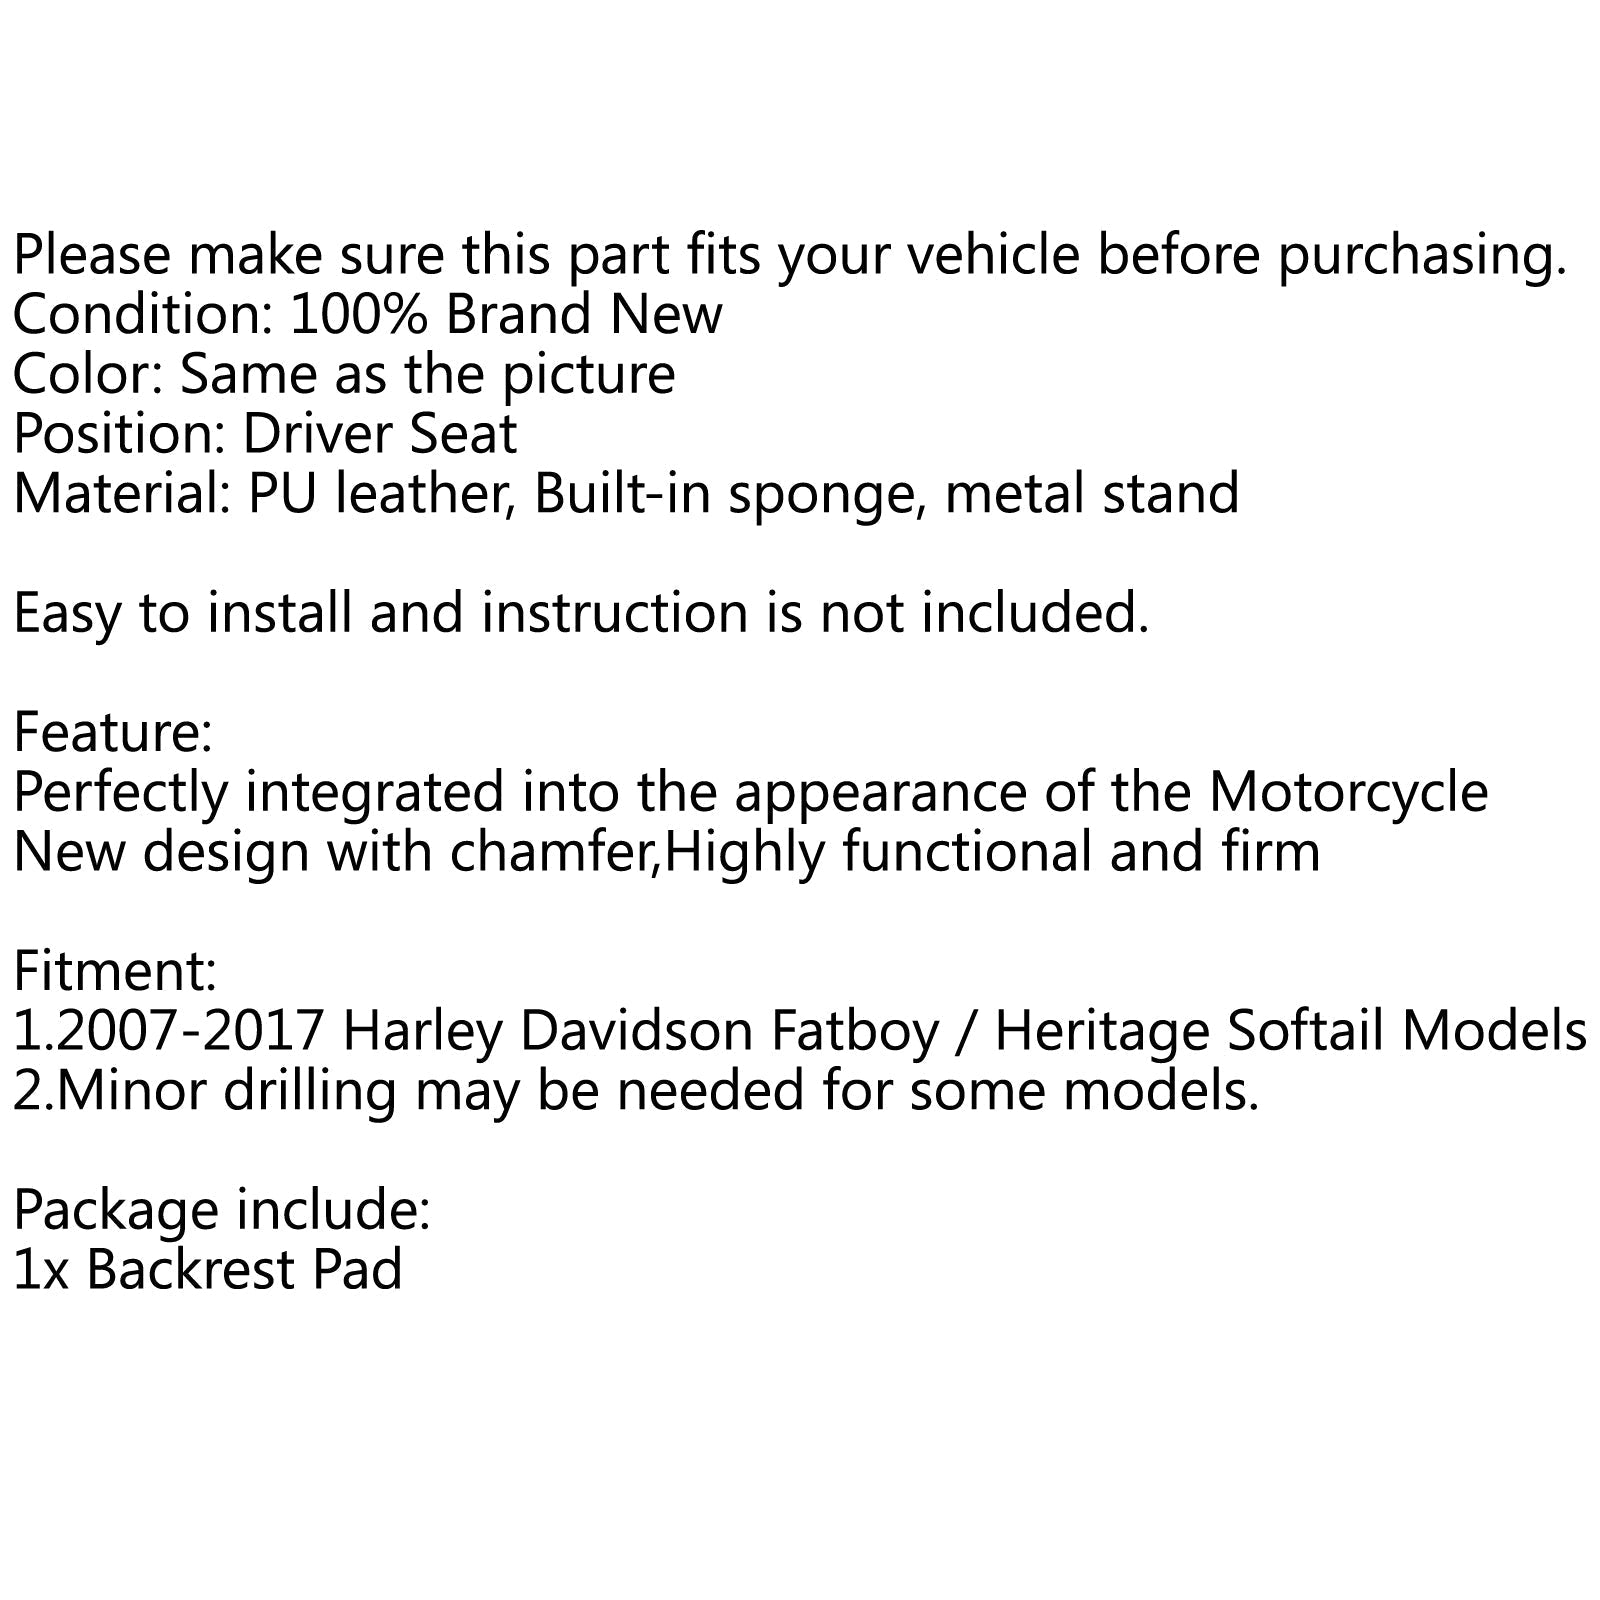 Cuscino schienale sedile conducente per Harley Fatboy Heritage Softail 2007-2017 generico